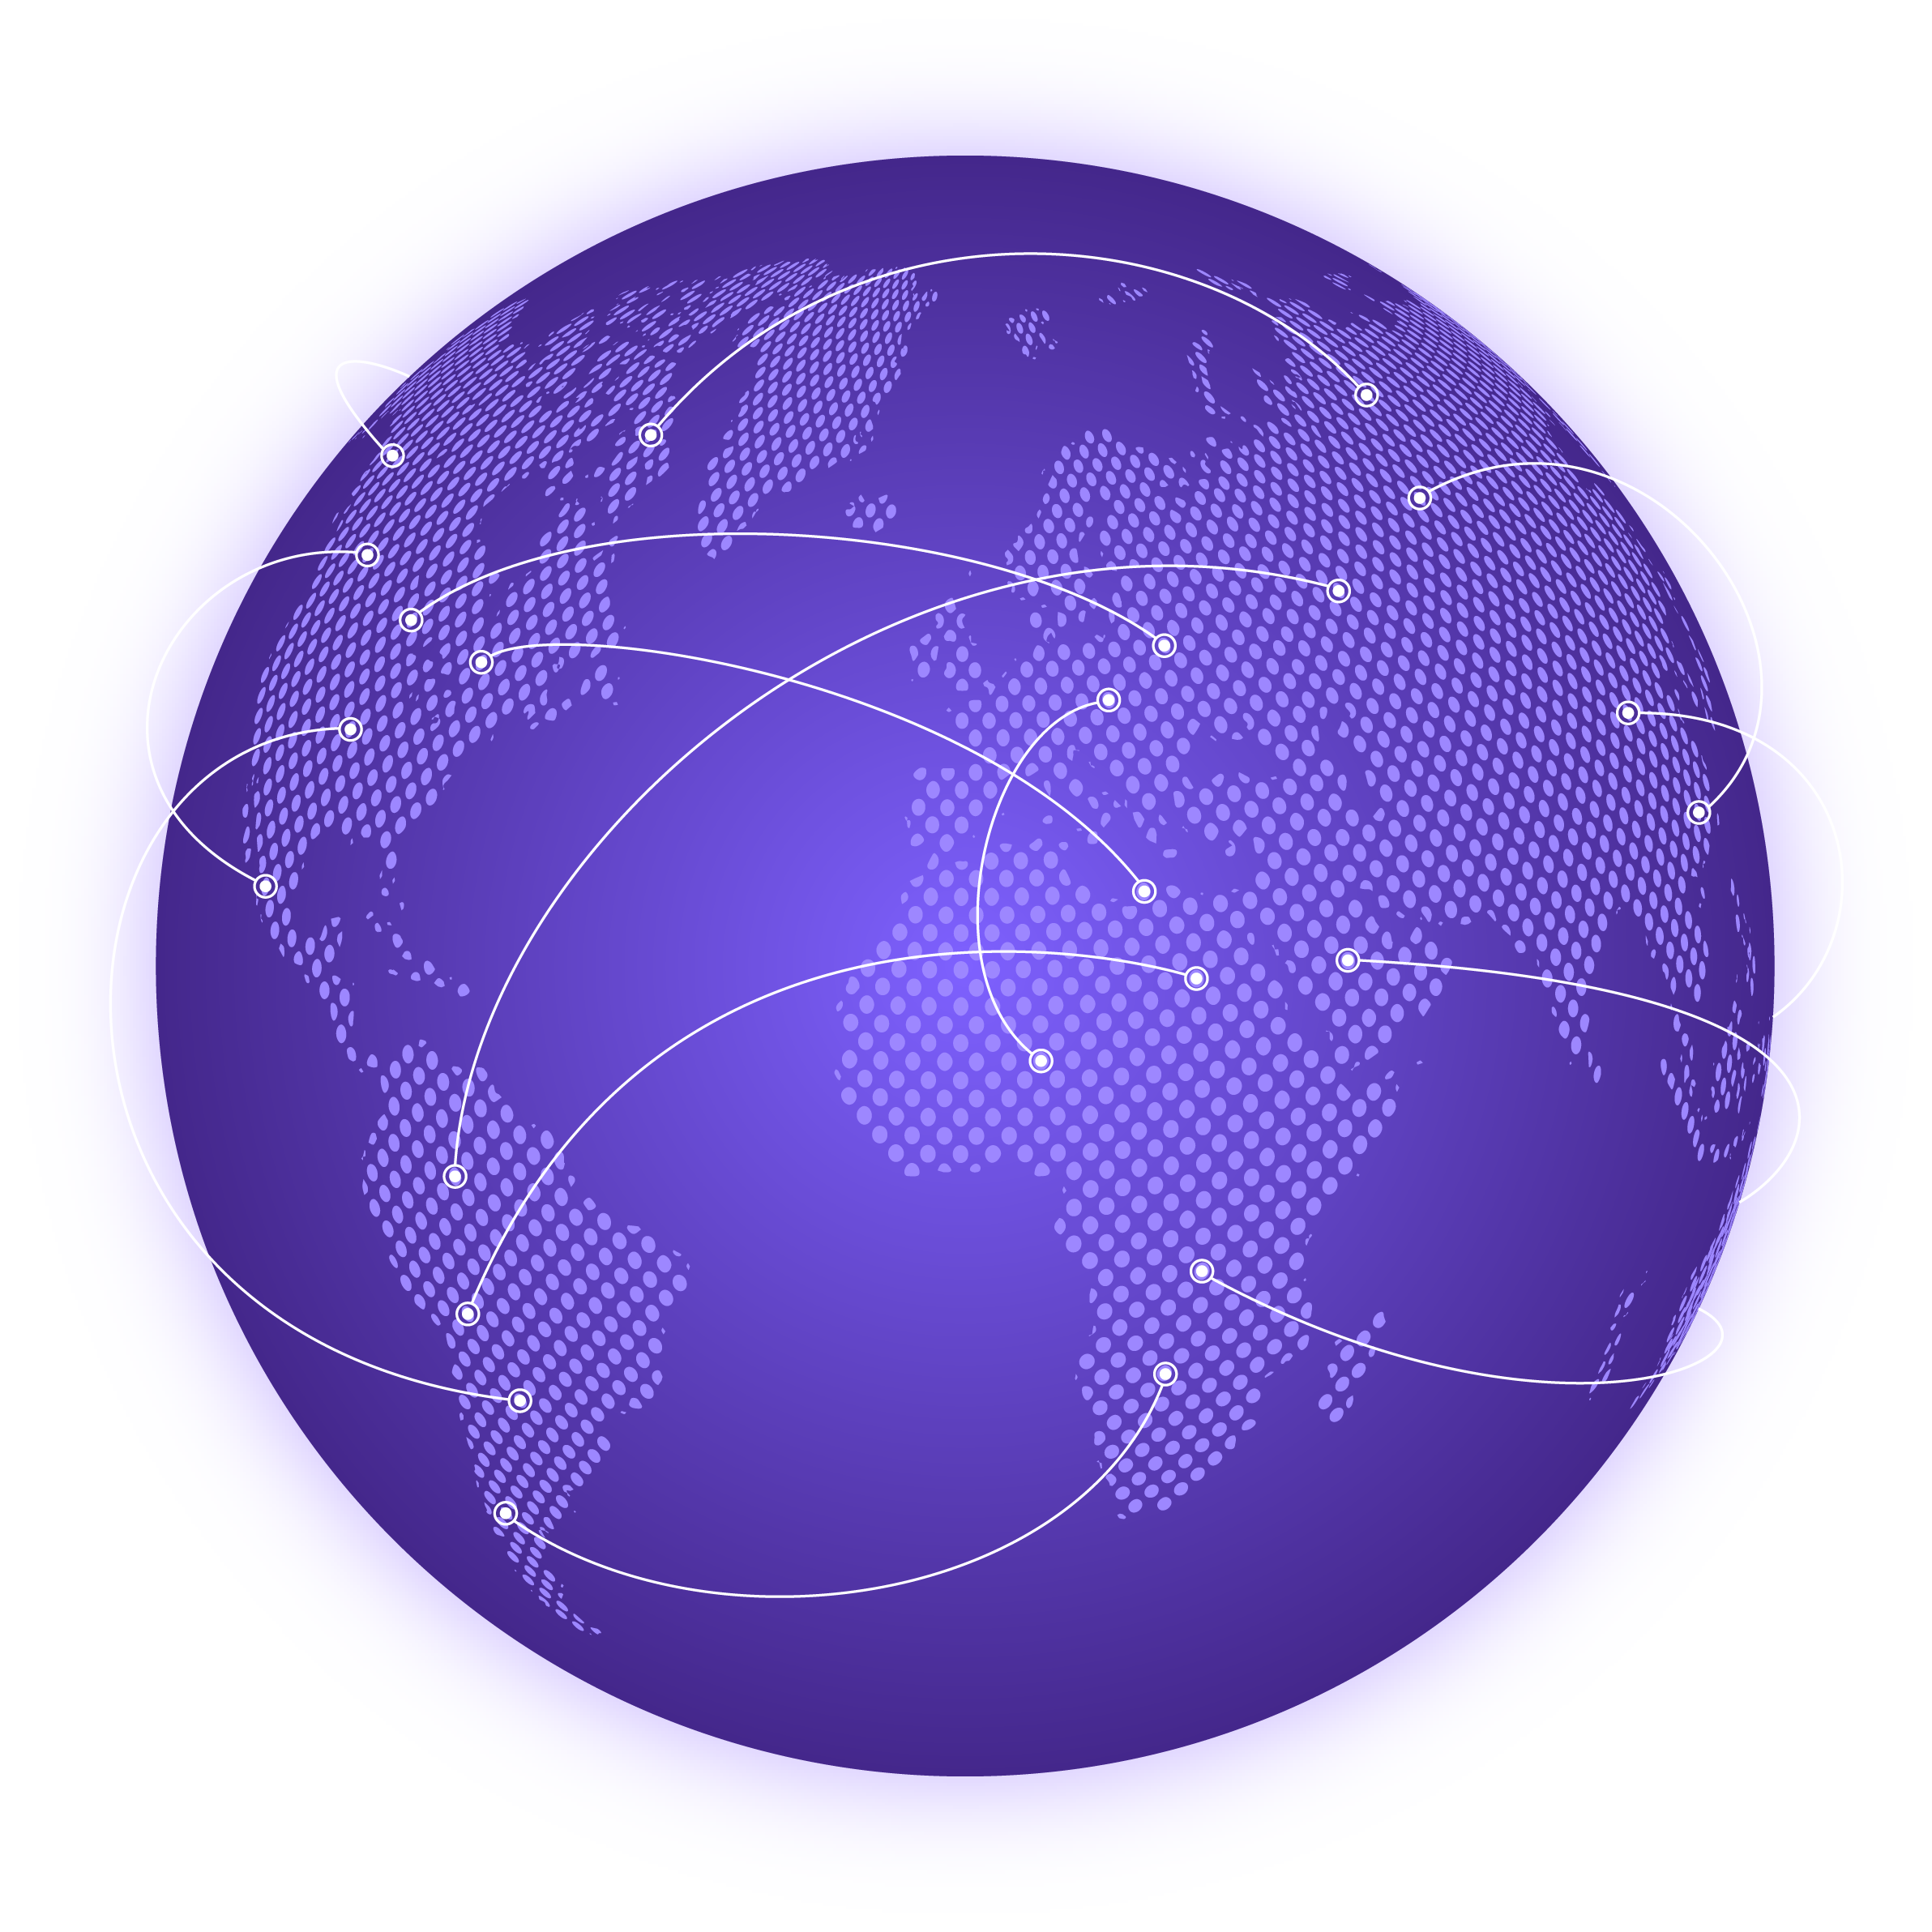 Globe avec plusieurs lignes arquées reliant différents continents